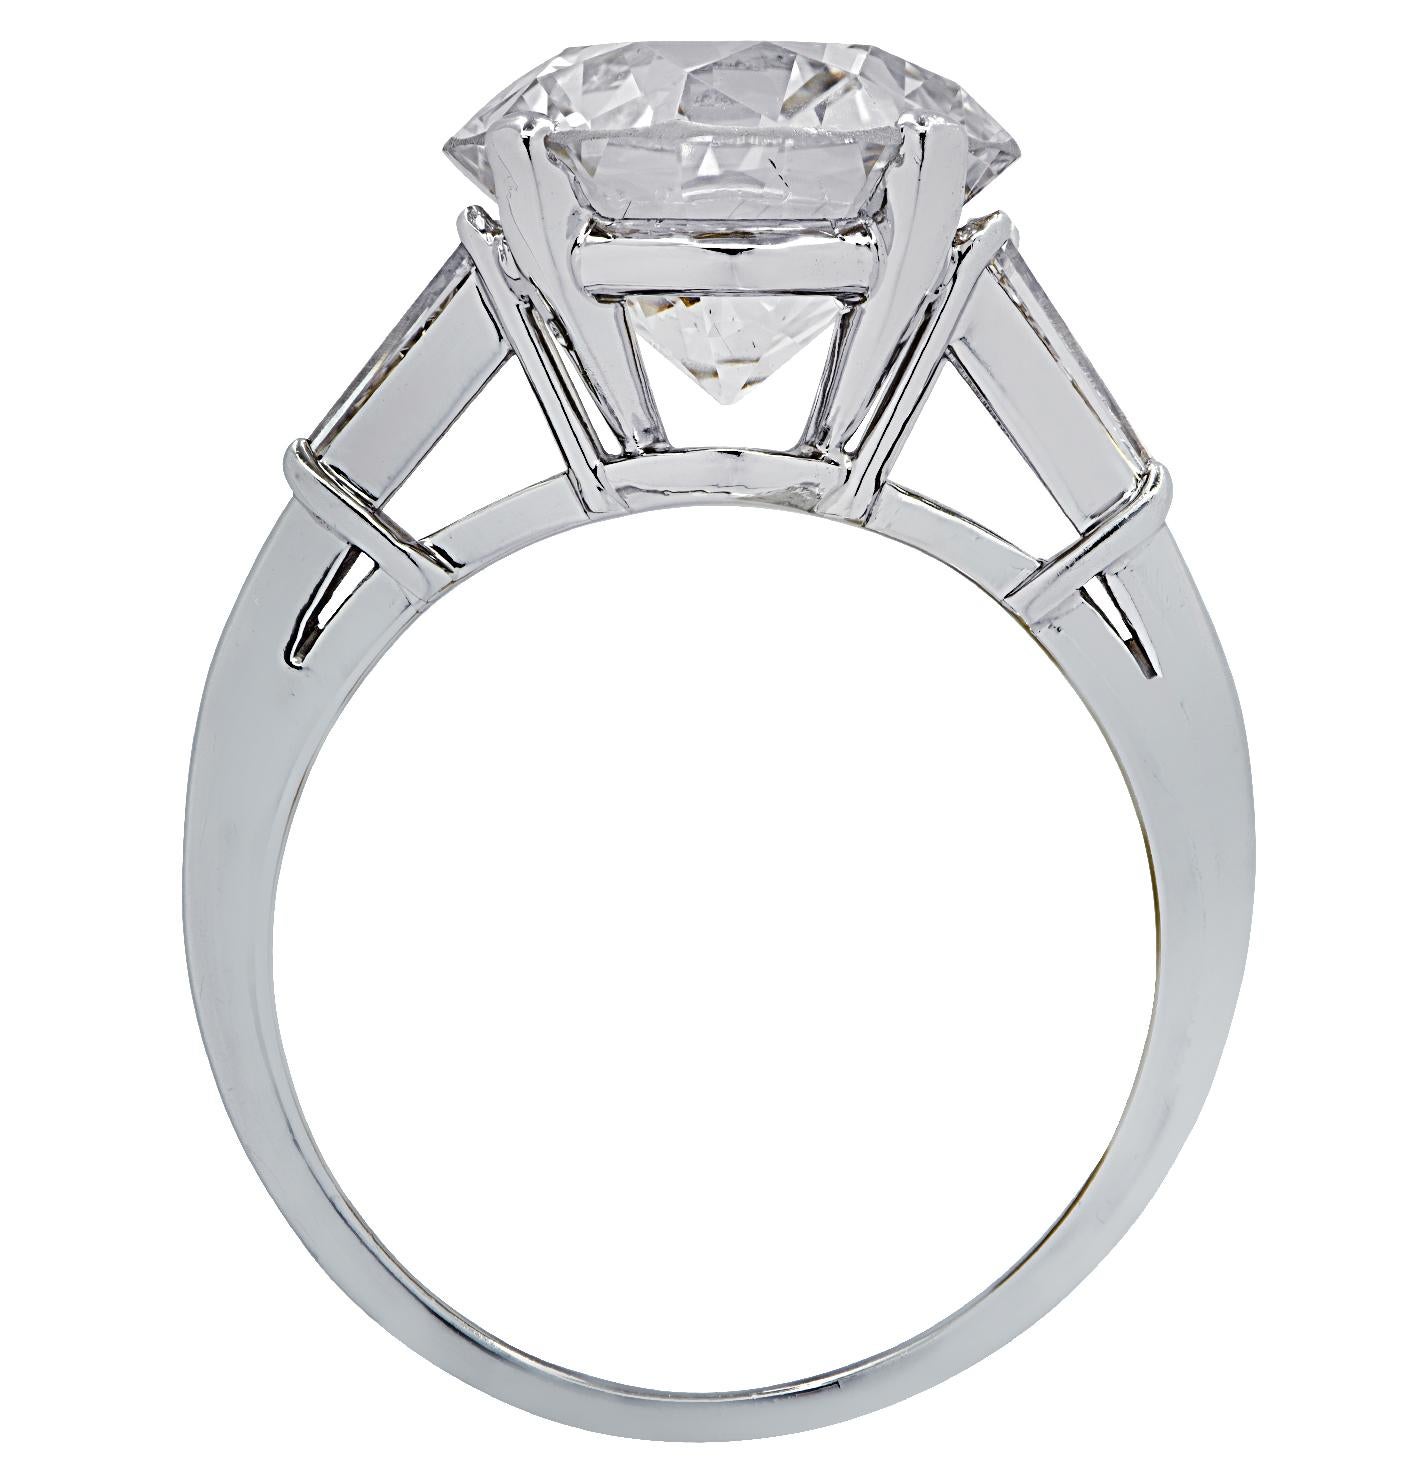 Old European Cut Vivid Diamonds GIA Certified 4.87 Carat Diamond Engagement Ring